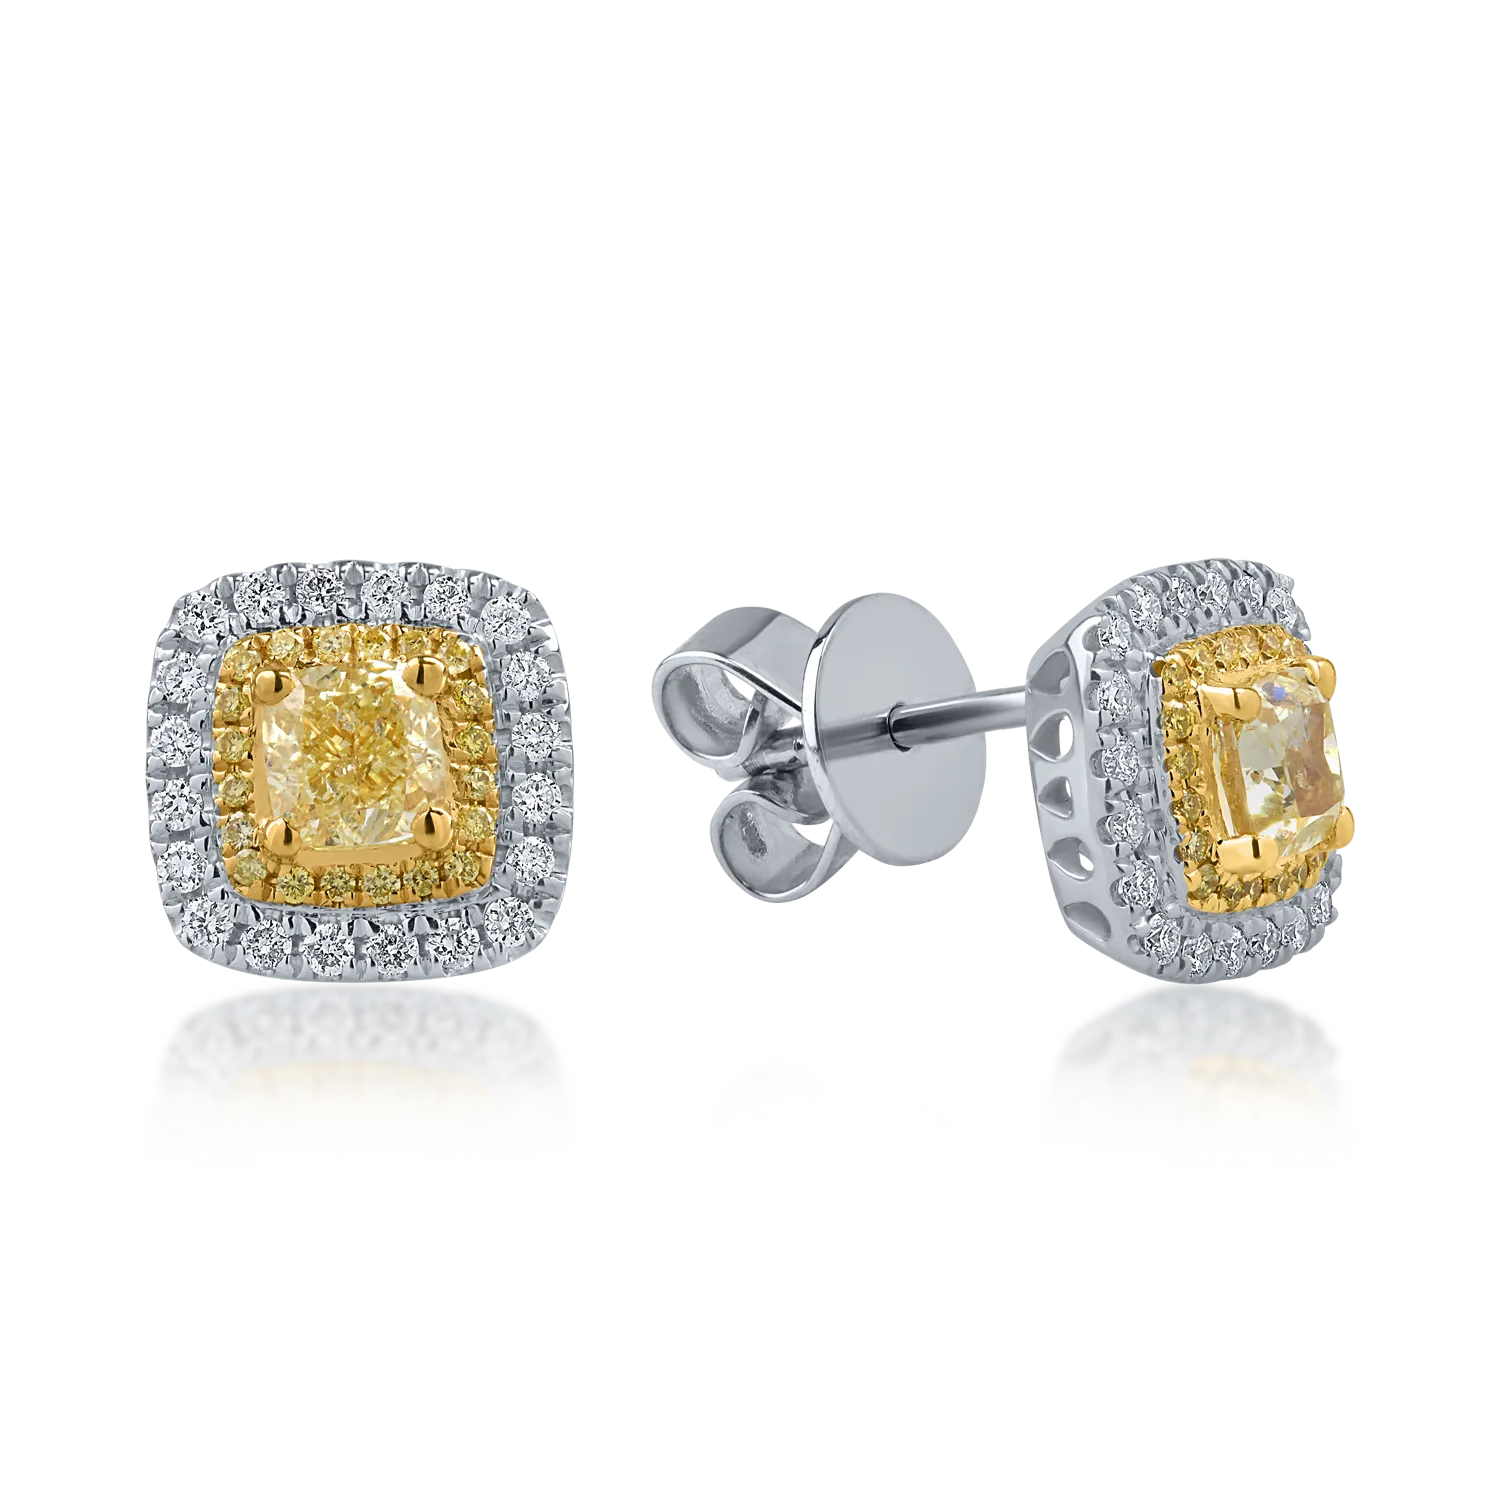 Cercei din aur alb-galben cu diamante galbene de 1.1ct si diamante transparente de 0.26ct